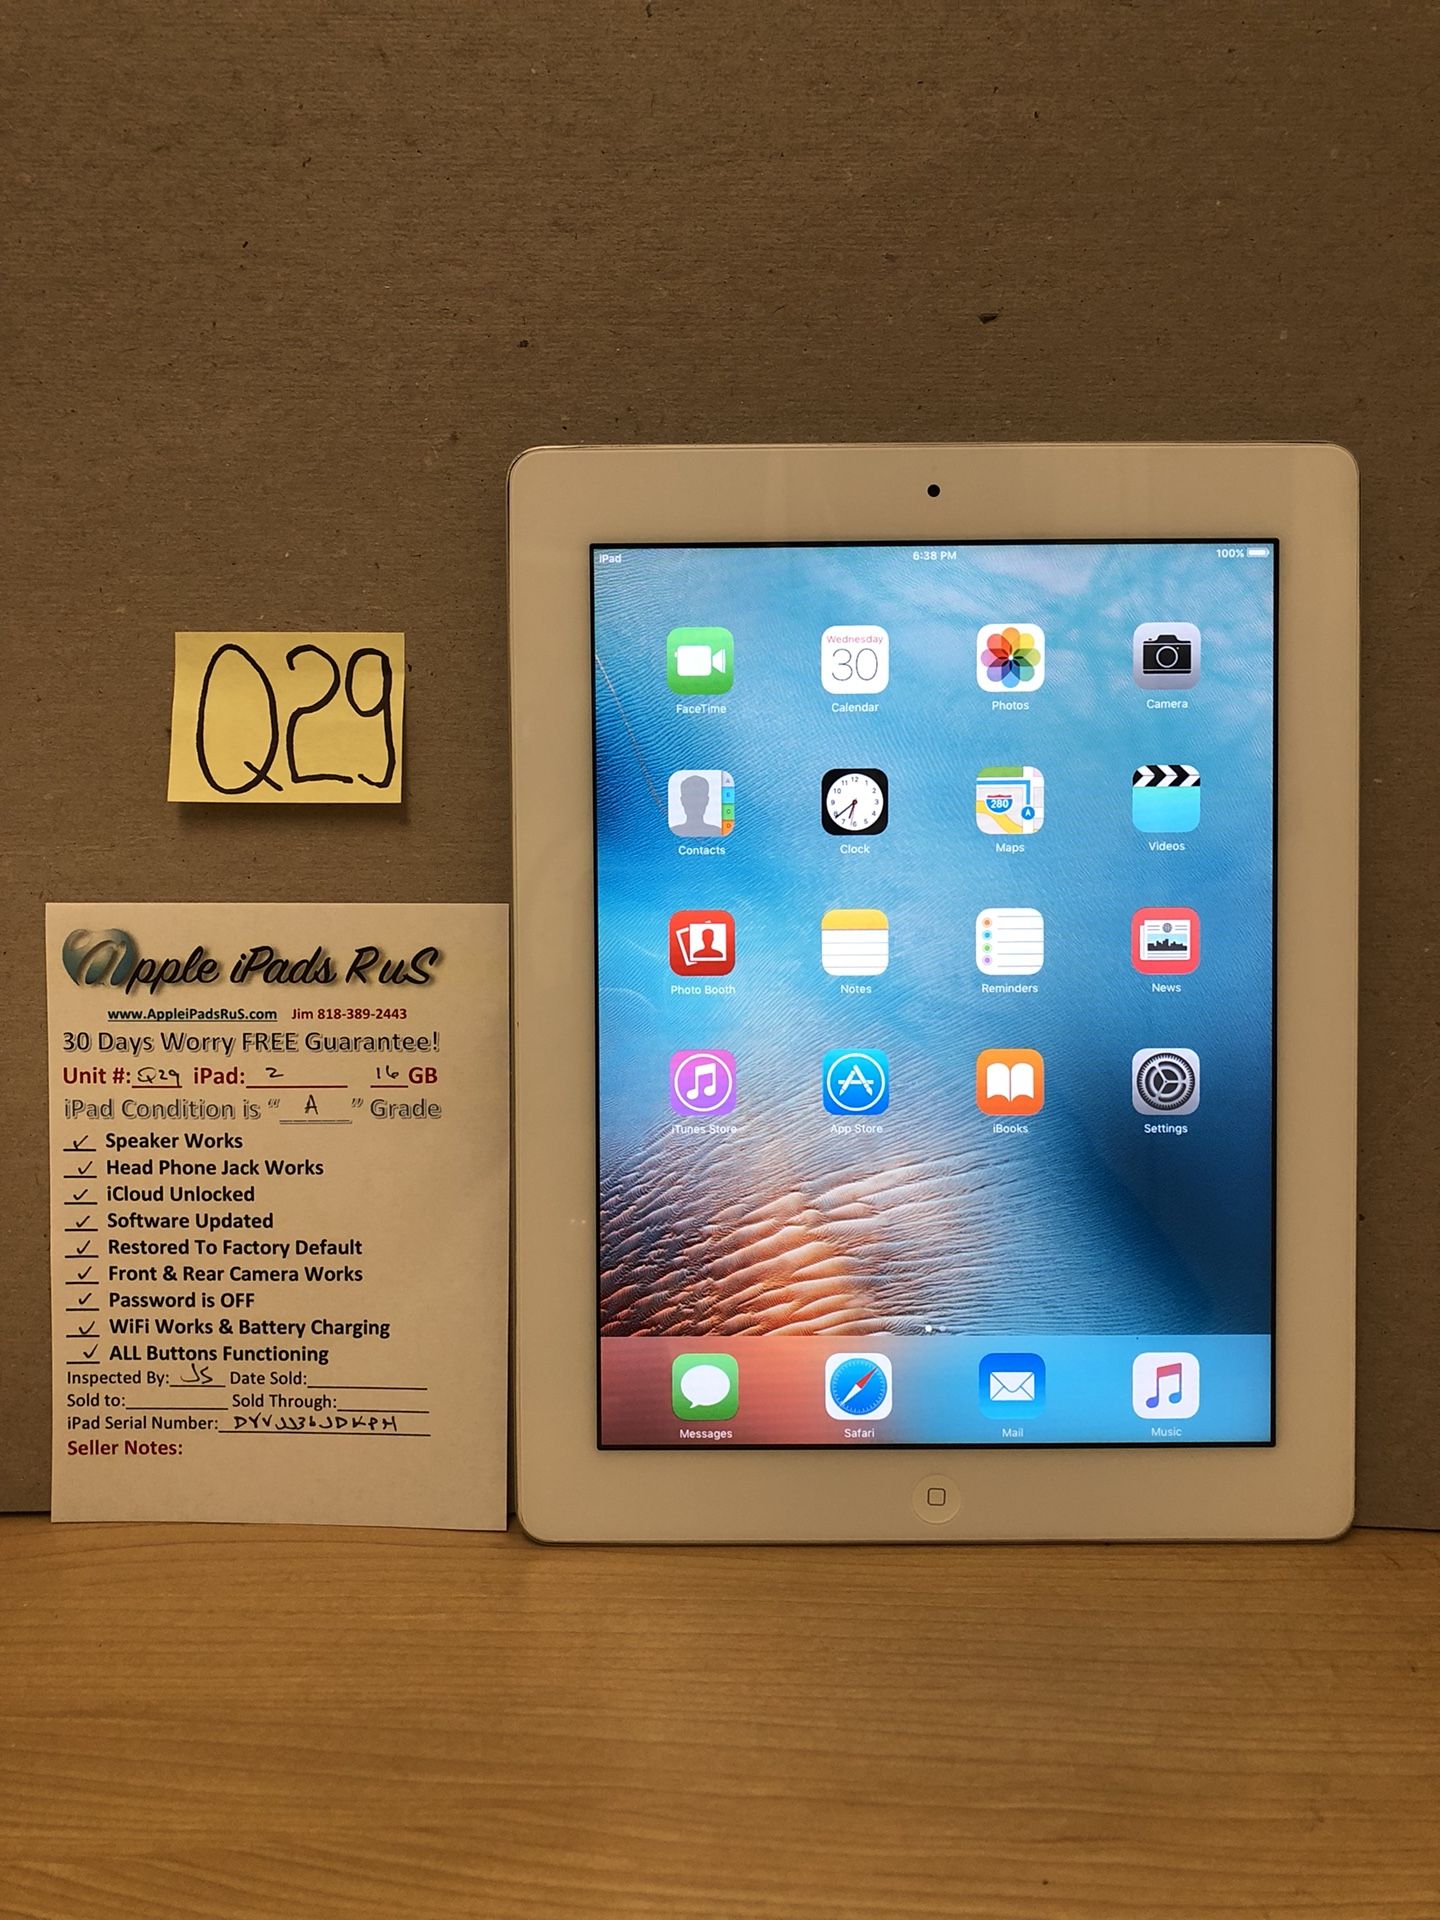 Q29 - iPad 2 16GB